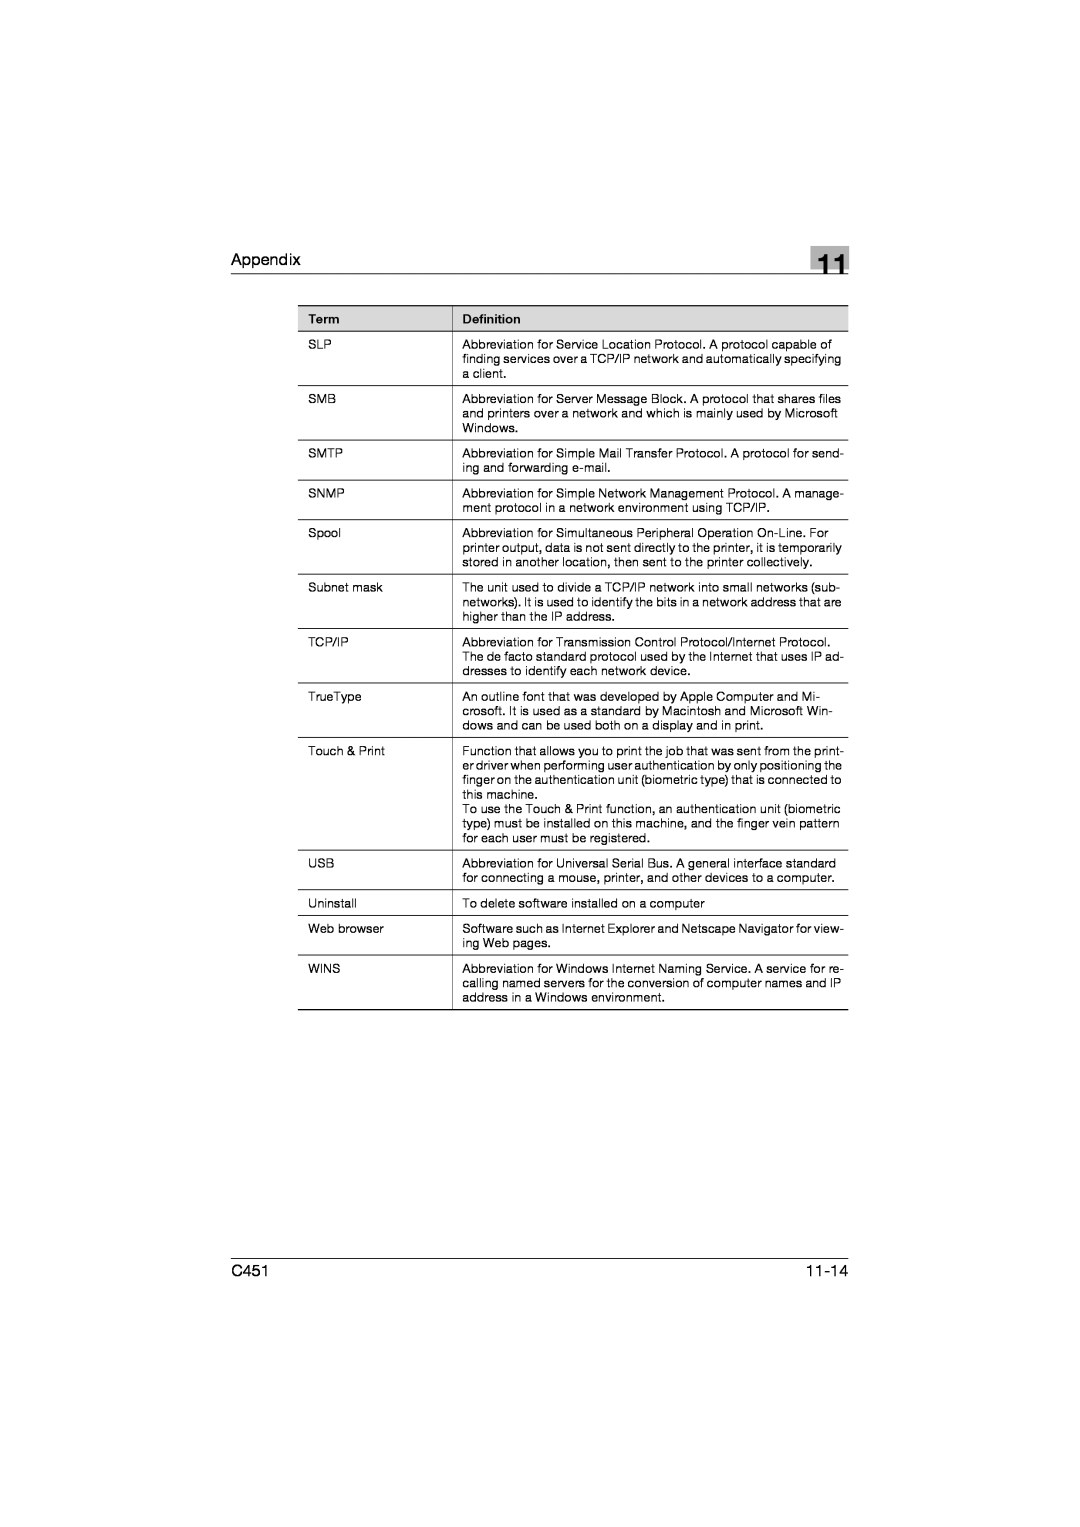 Konica Minolta C451 manual Appendix, 11-14 